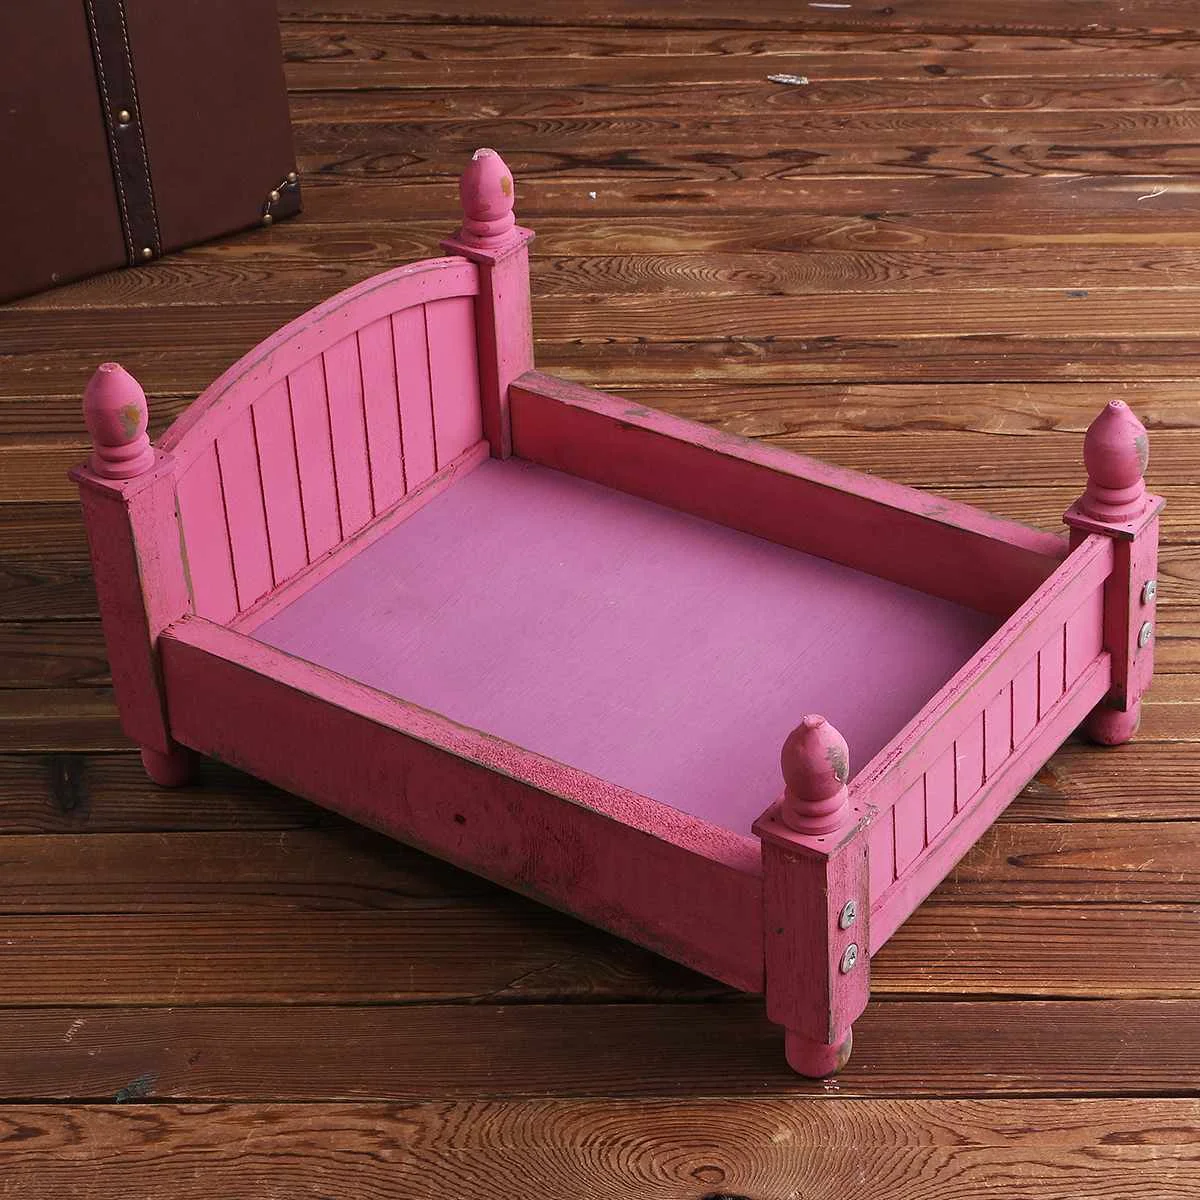 Bioby фон для фотографирования новорожденных с изображением съемки реквизит ретро деревянная кровать детский фон для студийной фотосъемки с изображением корзины розовый/фиолетовый/зеленый/небесно-голубой - Цвет: Розовый